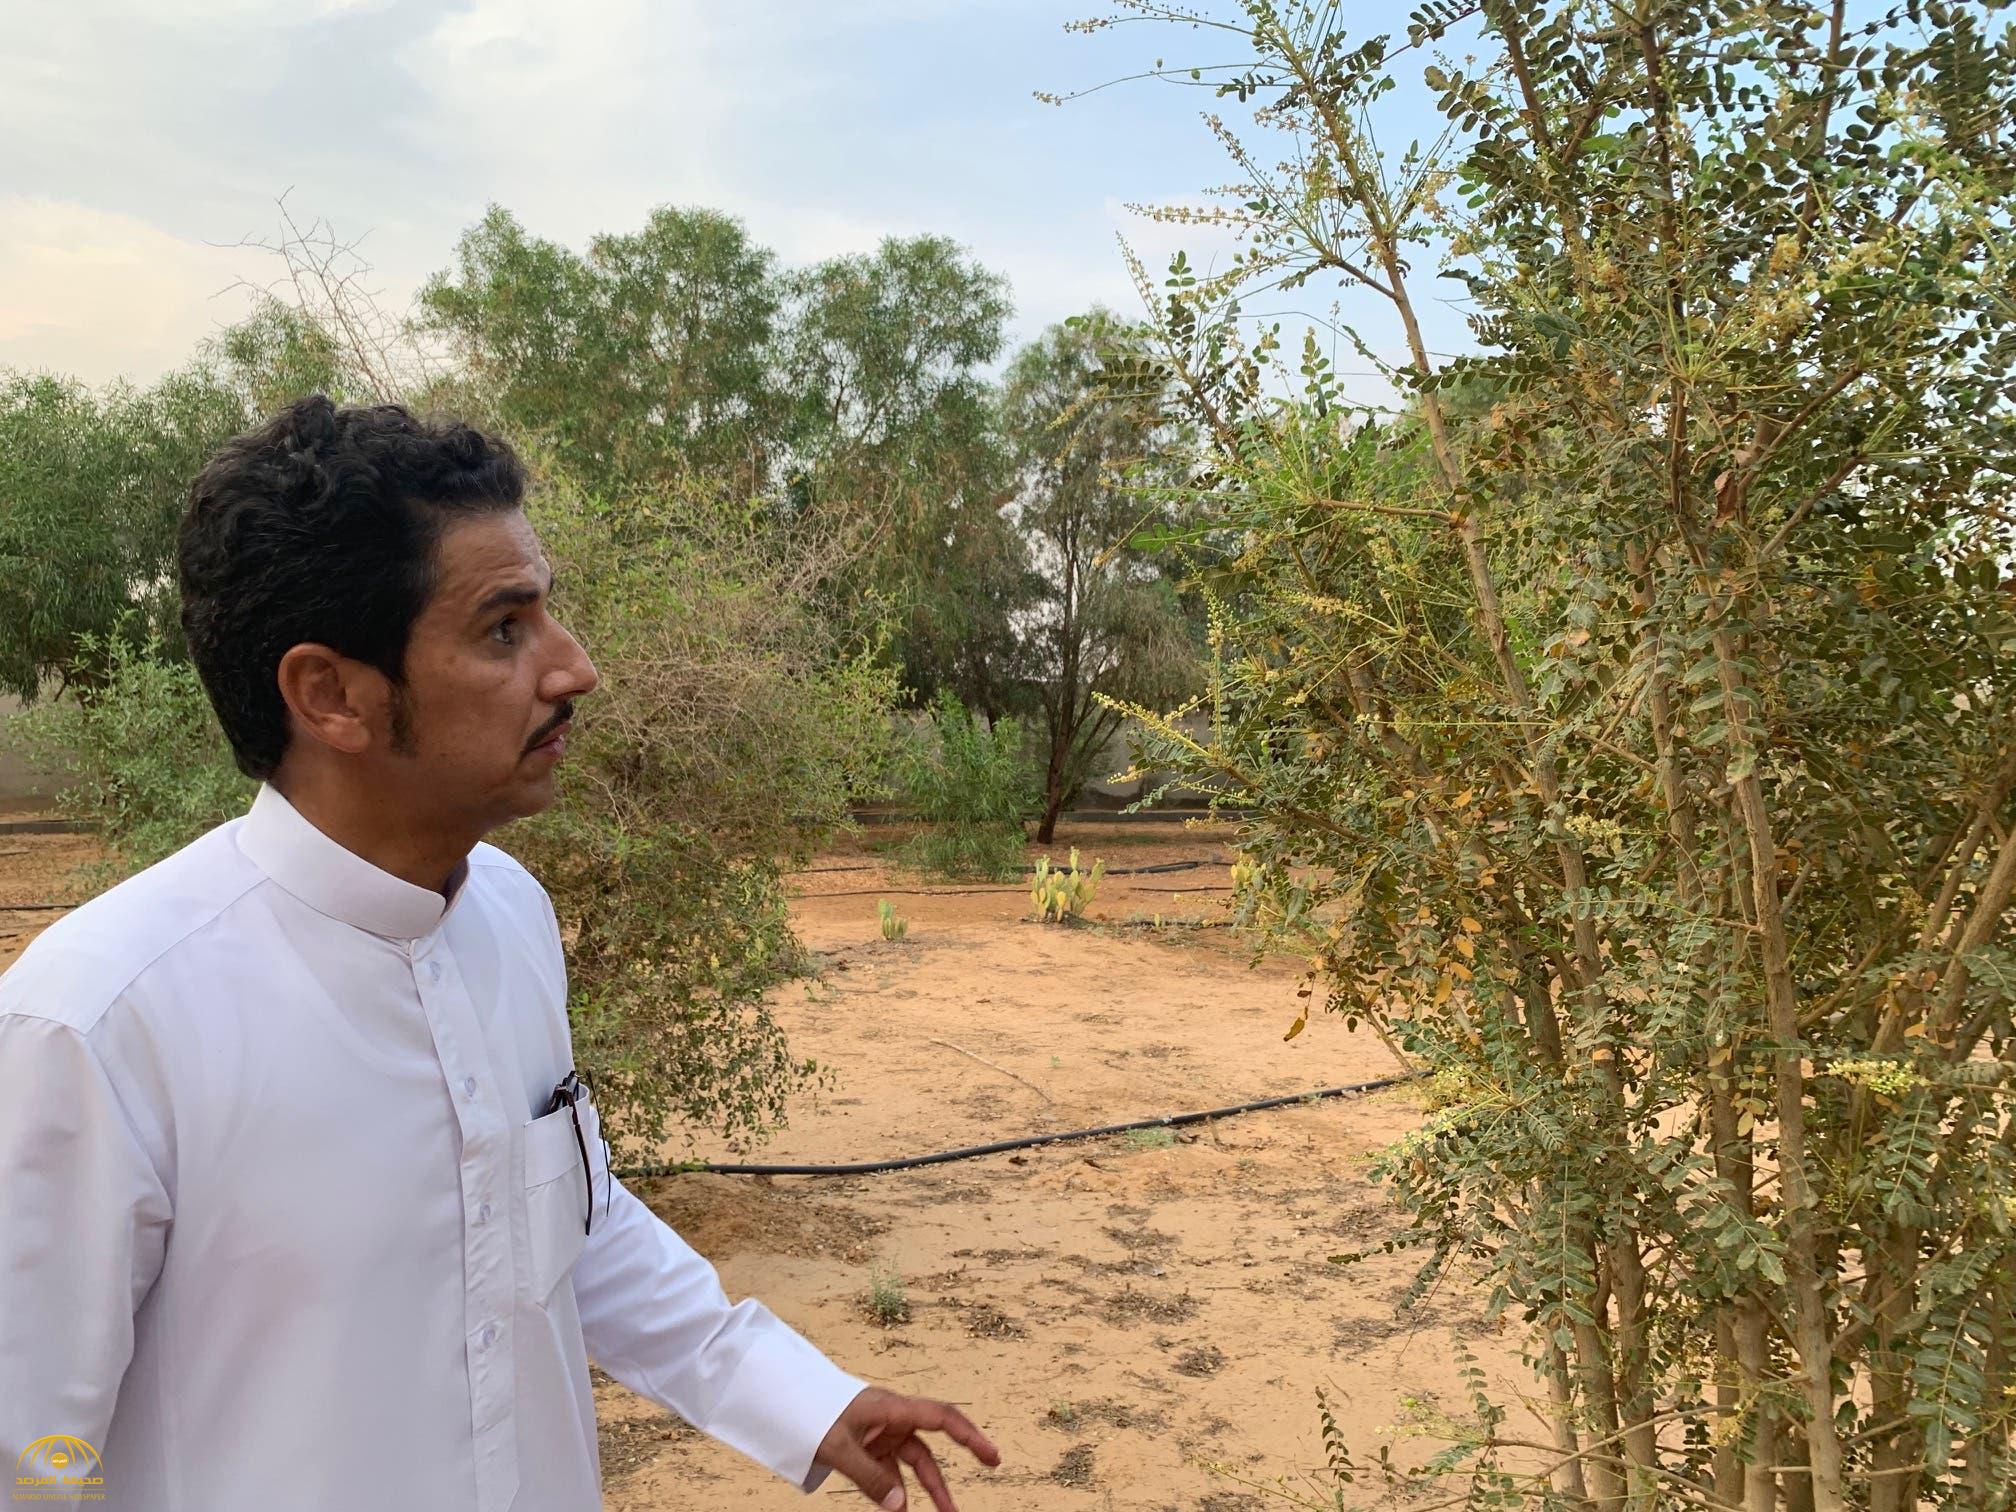 بعد 6 سنوات من التجارب.. شاهد: مواطن سعودي ينجح في زراعة "شجرة البخور" الأسطورية